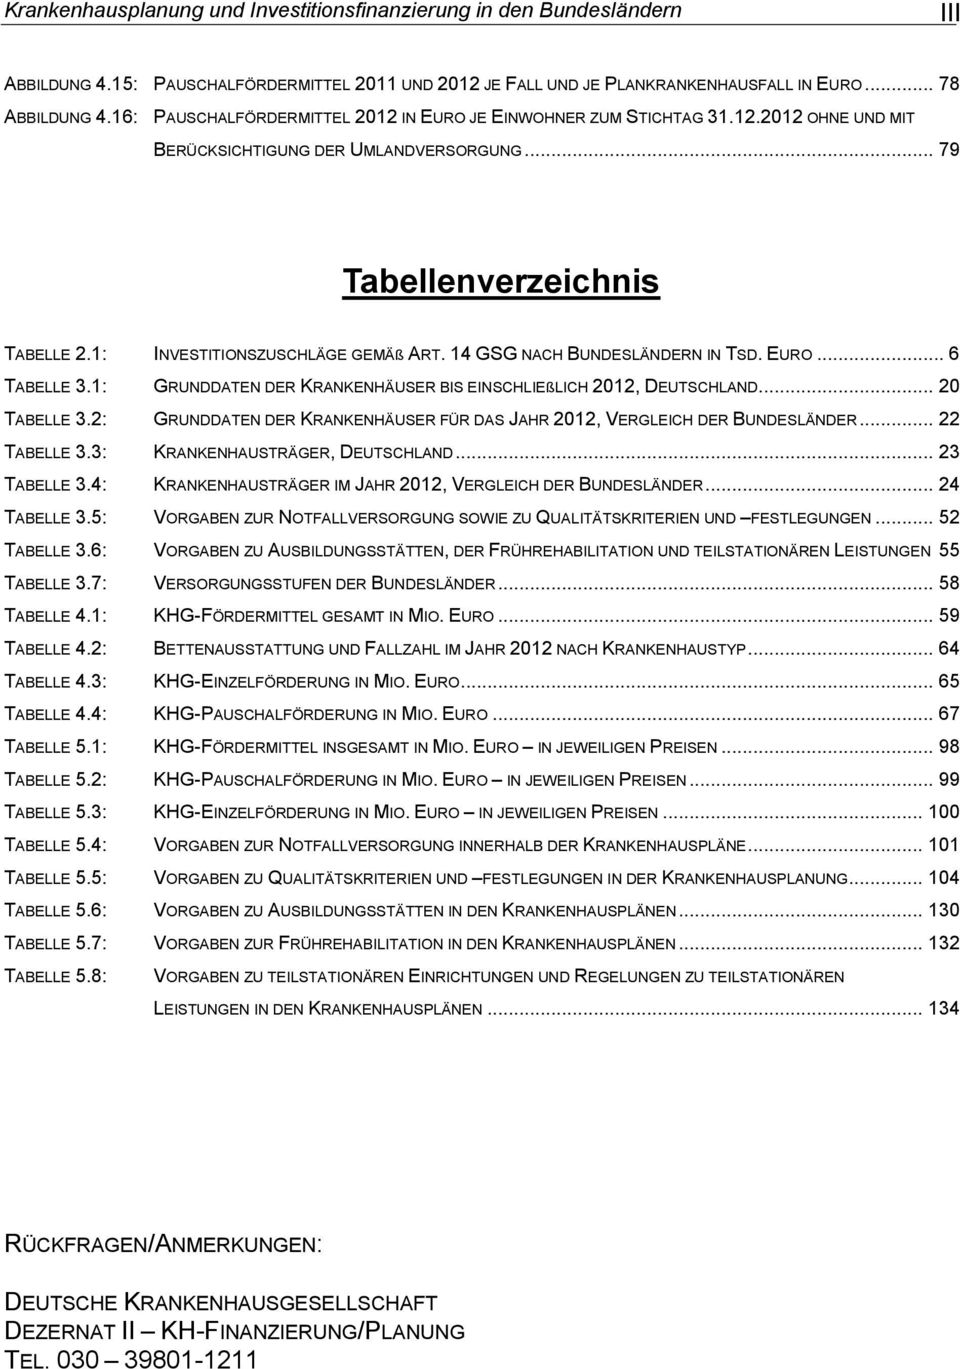 14 GSG NACH BUNDESLÄNDERN IN TSD. EURO... 6 TABELLE 3.1: GRUNDDATEN DER KRANKENHÄUSER BIS EINSCHLIEßLICH 2012, DEUTSCHLAND... 20 TABELLE 3.